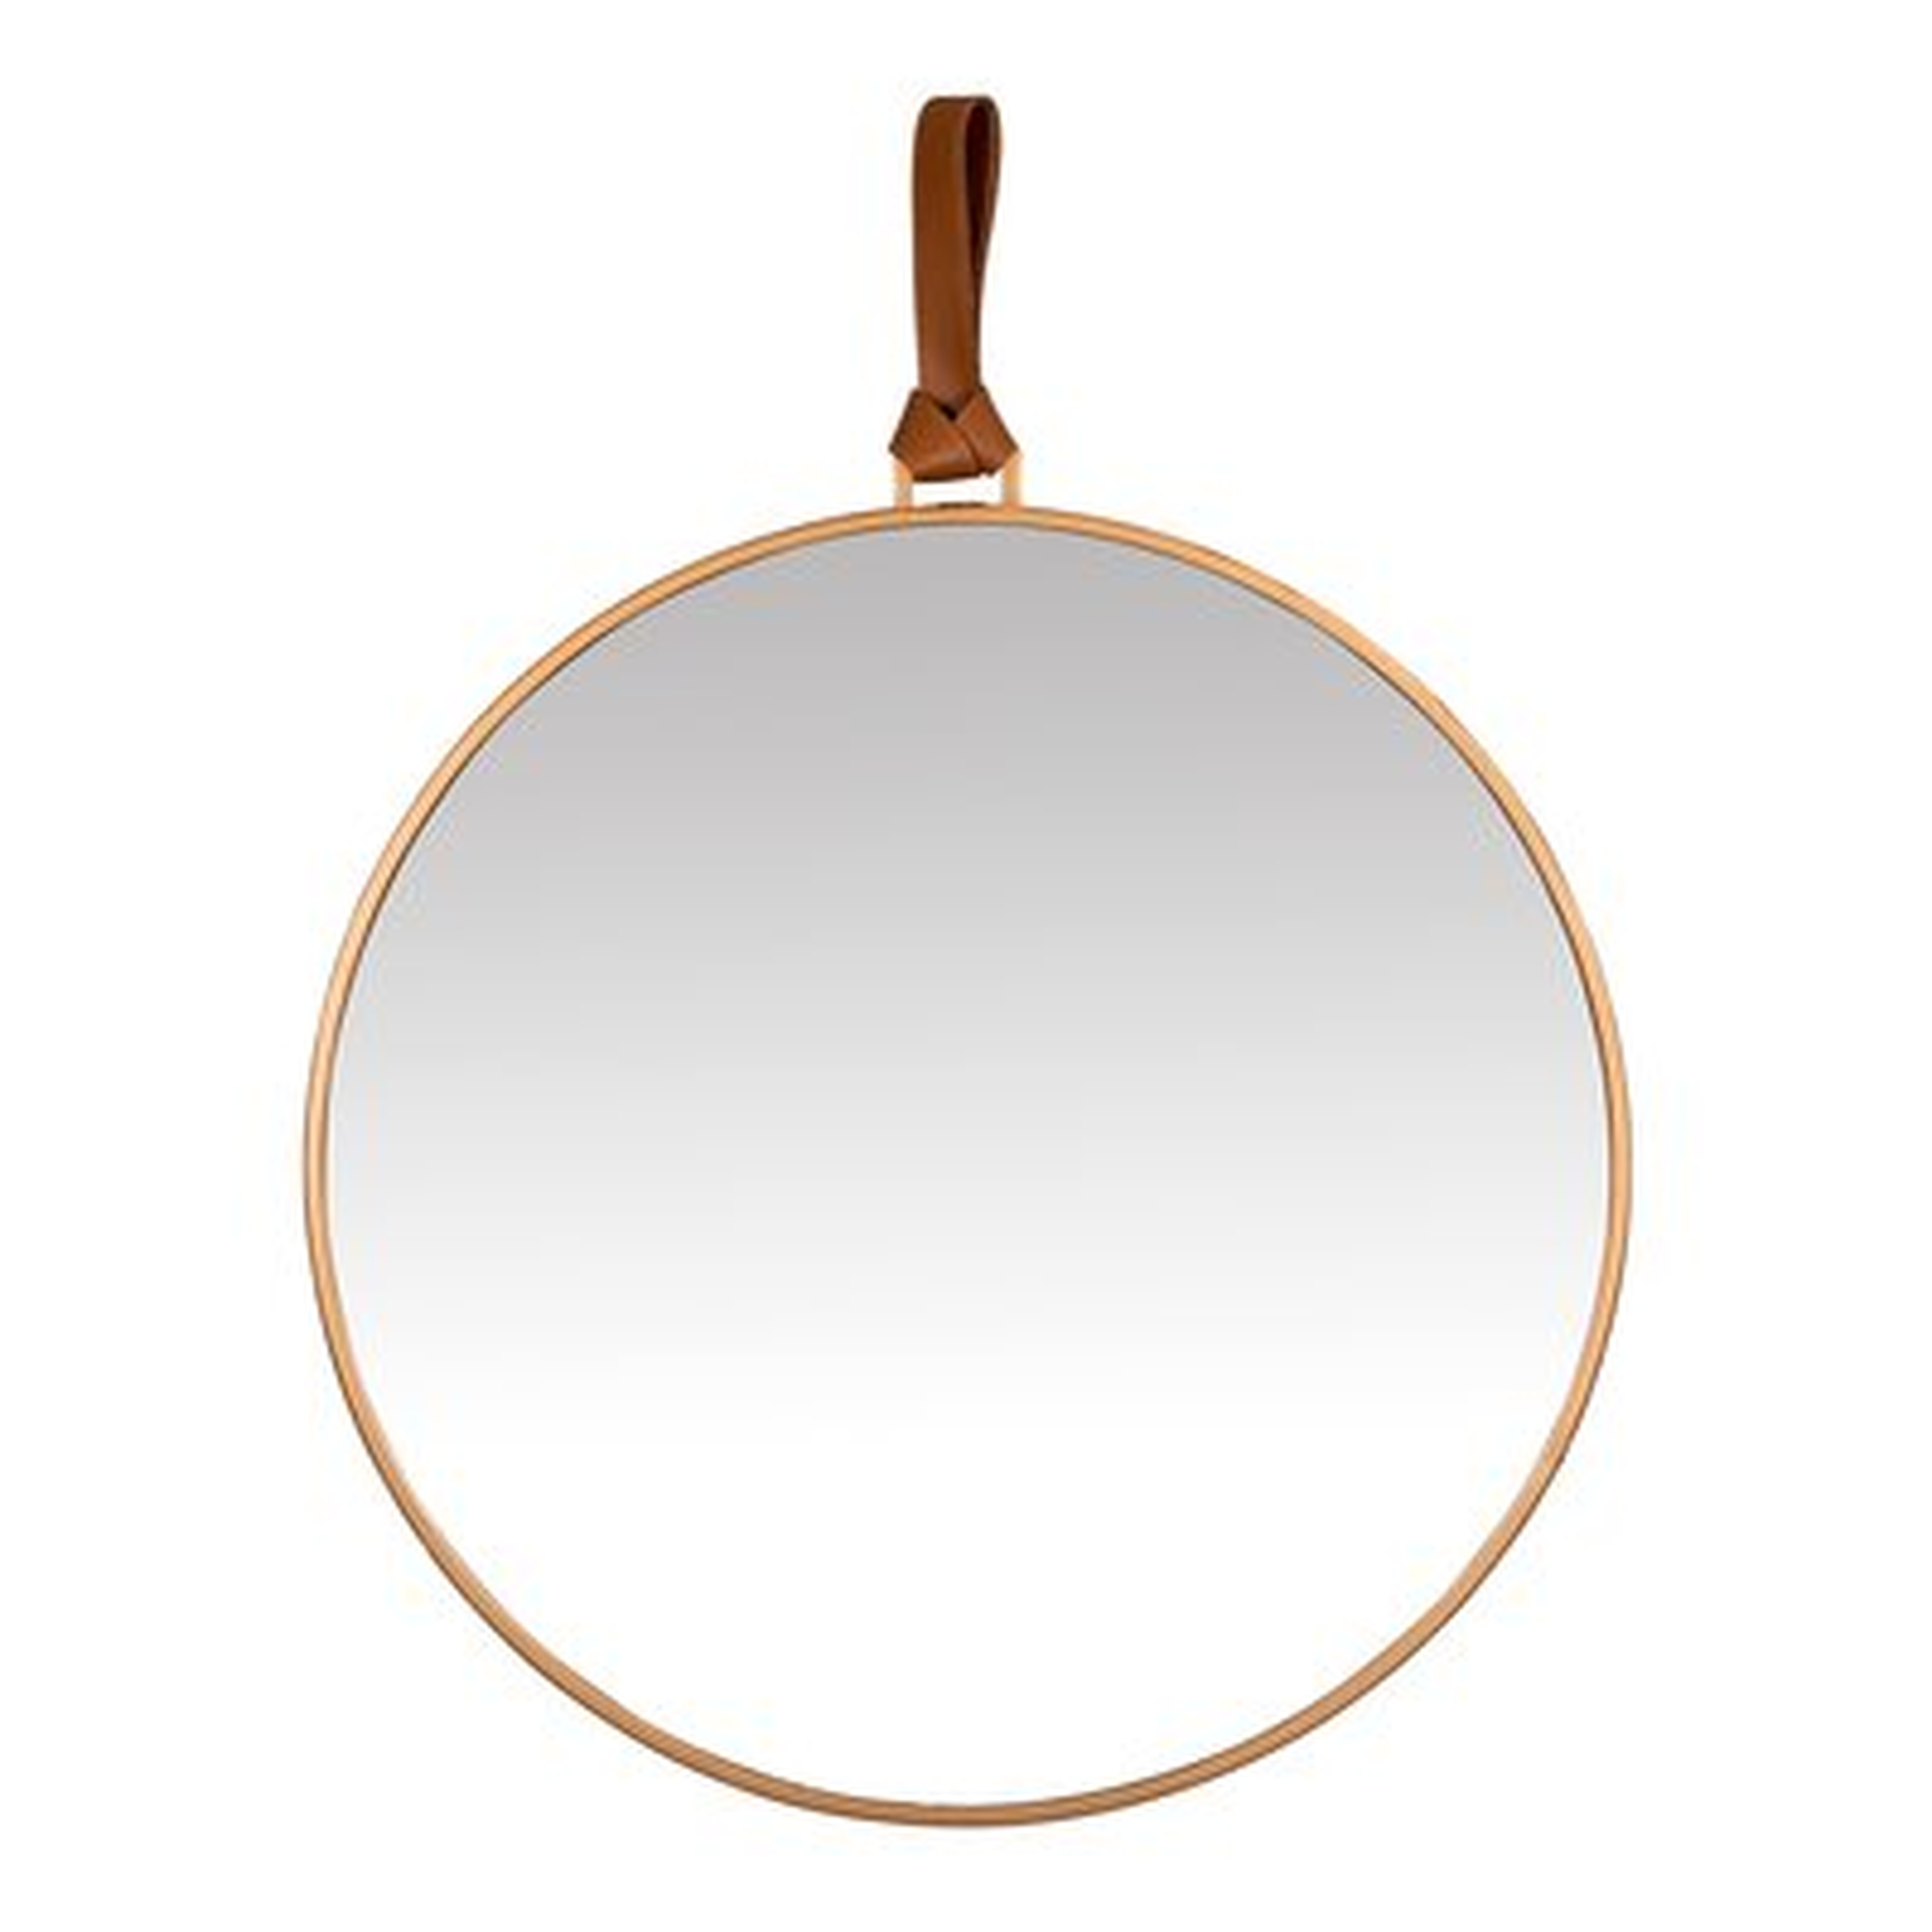 Minimalist Gold Round Mirror With Leather Strap - Wayfair